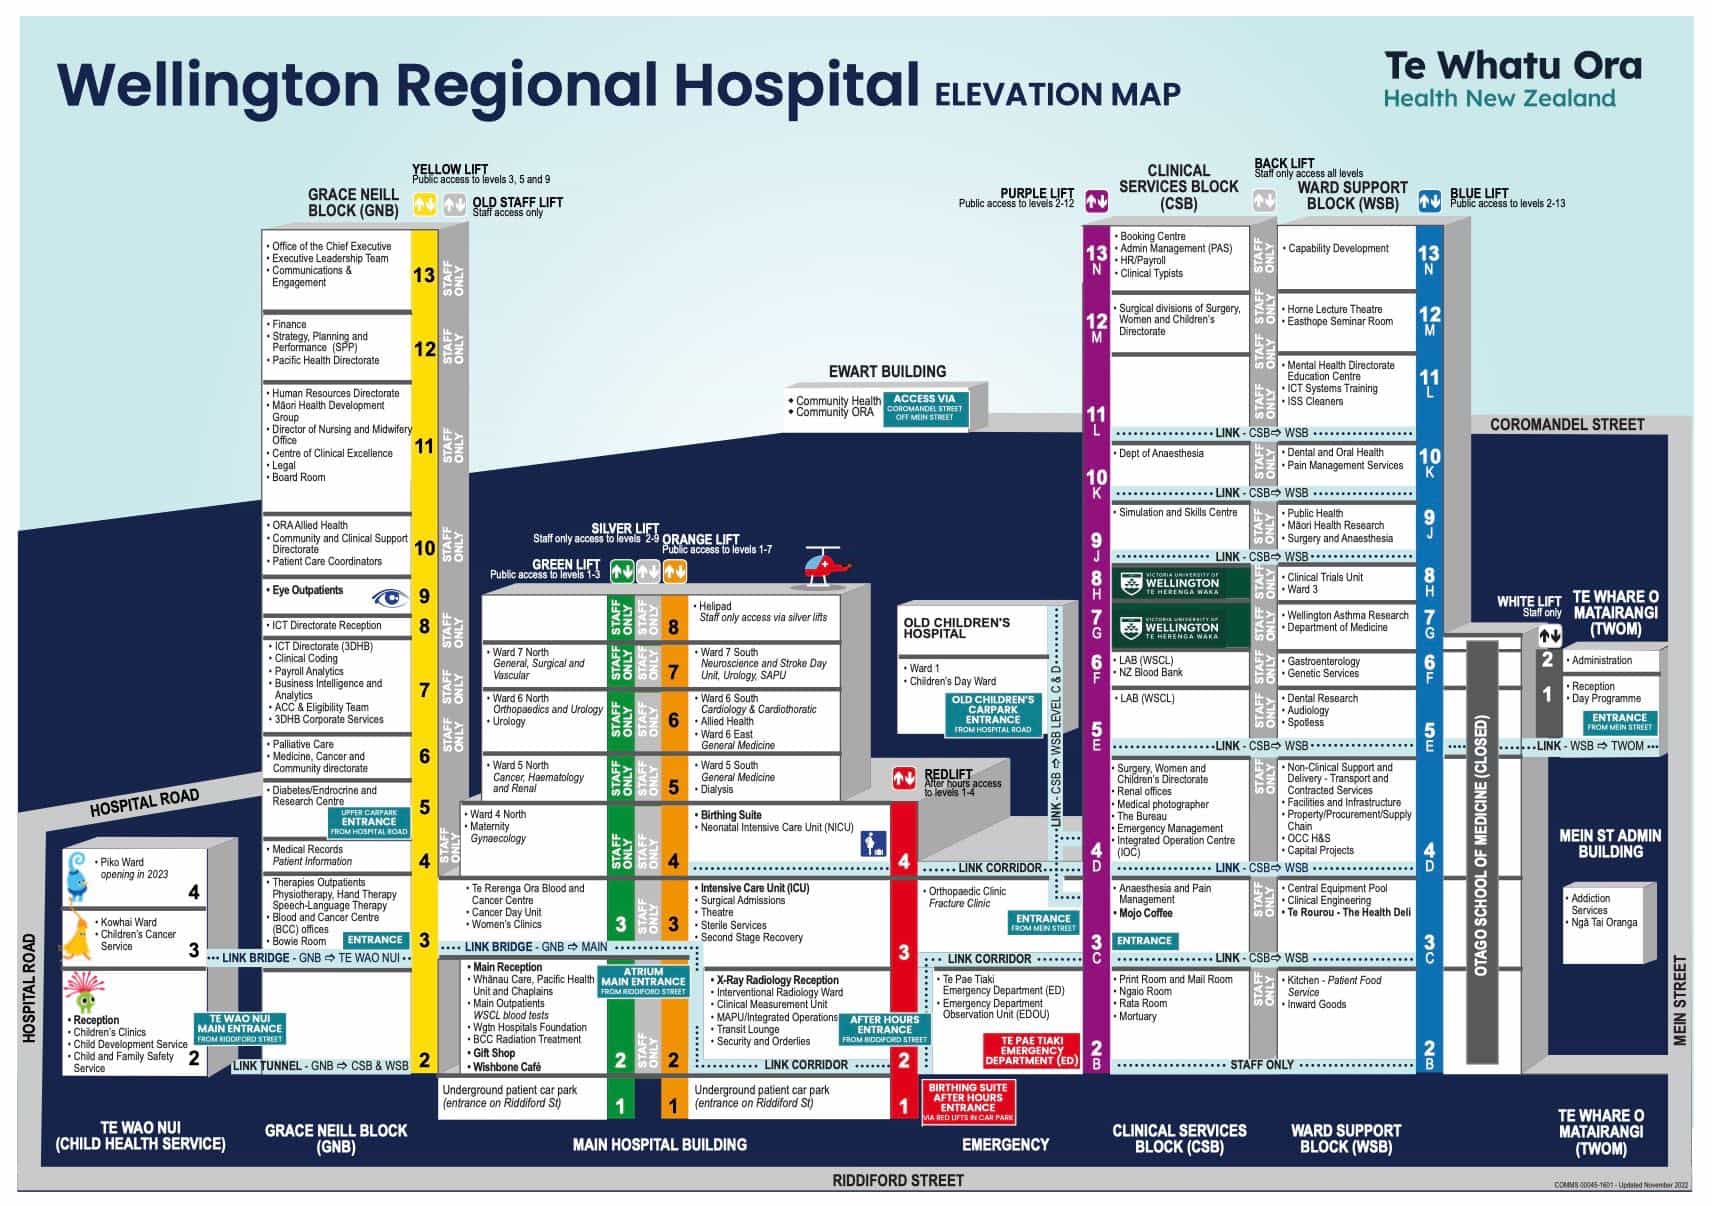 Map of Wellington Regional Hospital in cross-section